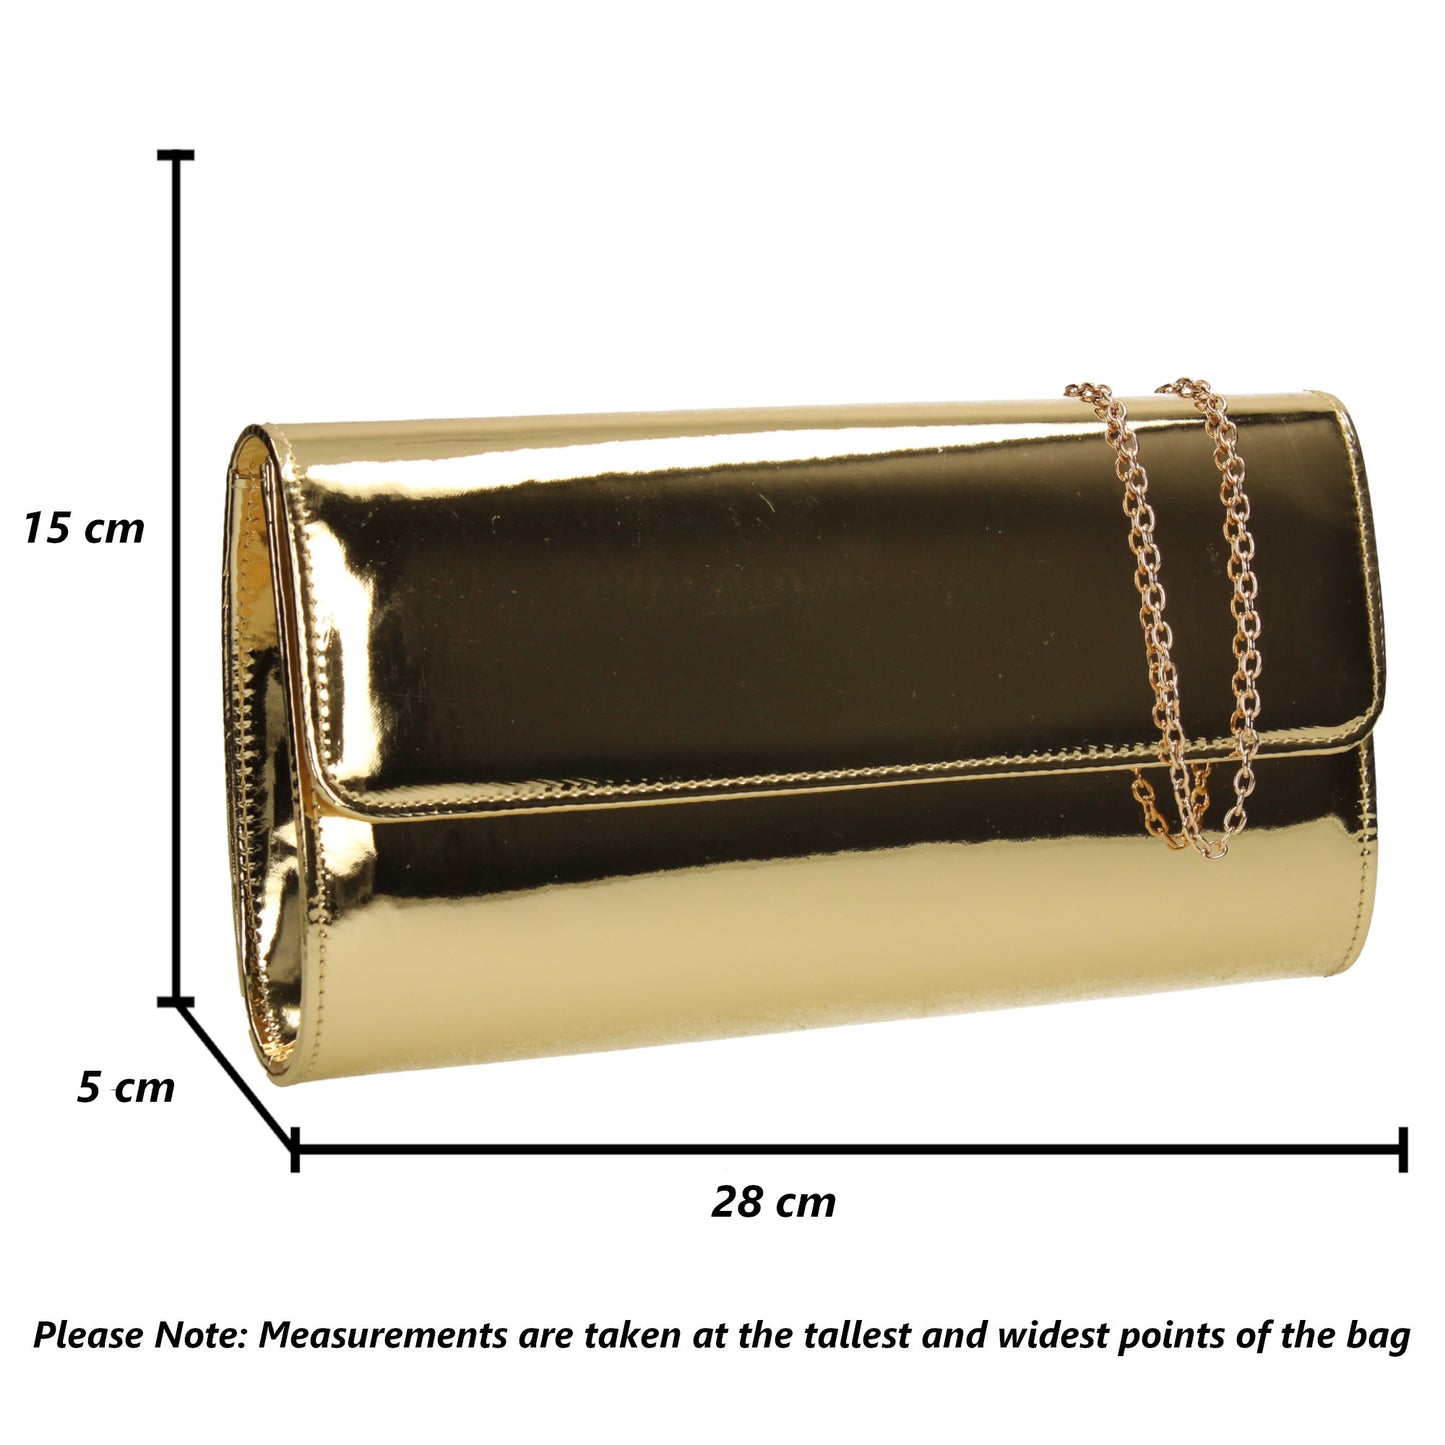 Cara Metallic Clutch Bag Gold